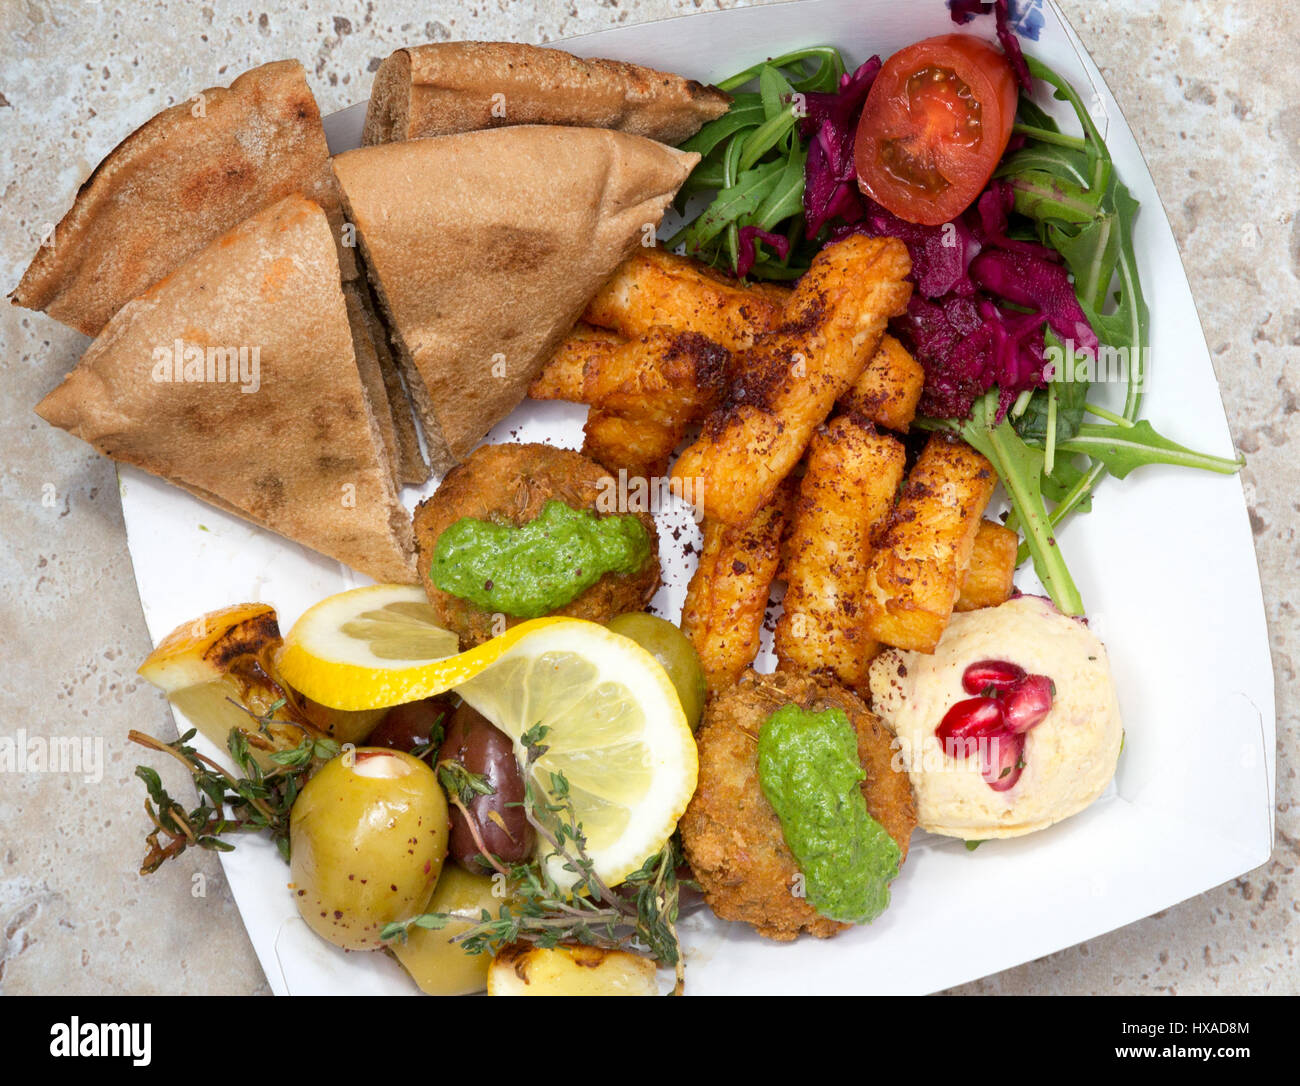 Lebensmittel - Nahen Osten Essen, vegetarisches Essen Auswahl verschiedener Mezze alle verfügbaren als Speisen zum mitnehmen, UK Stockfoto